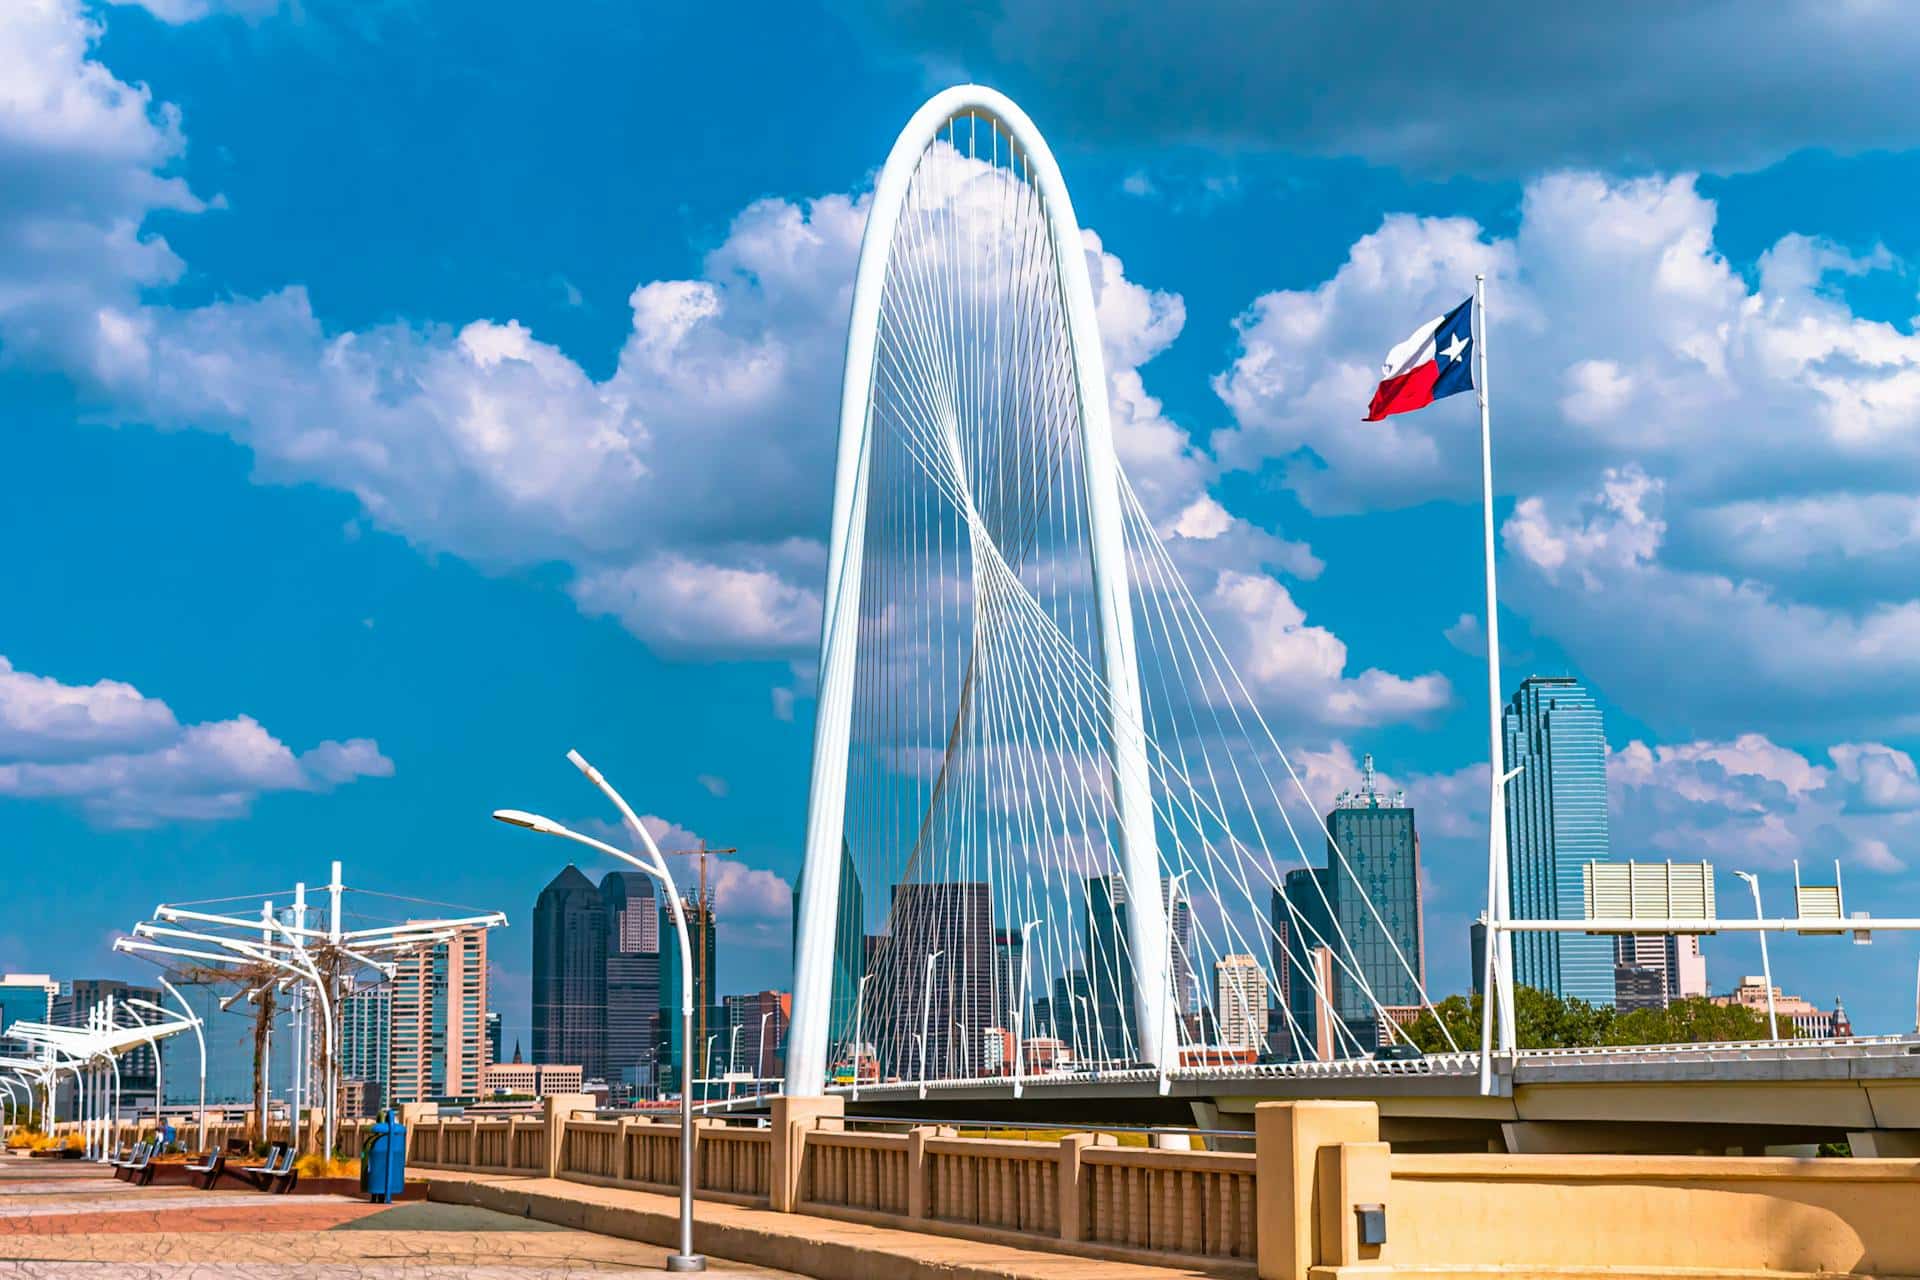 White bridge with a flag of Texas